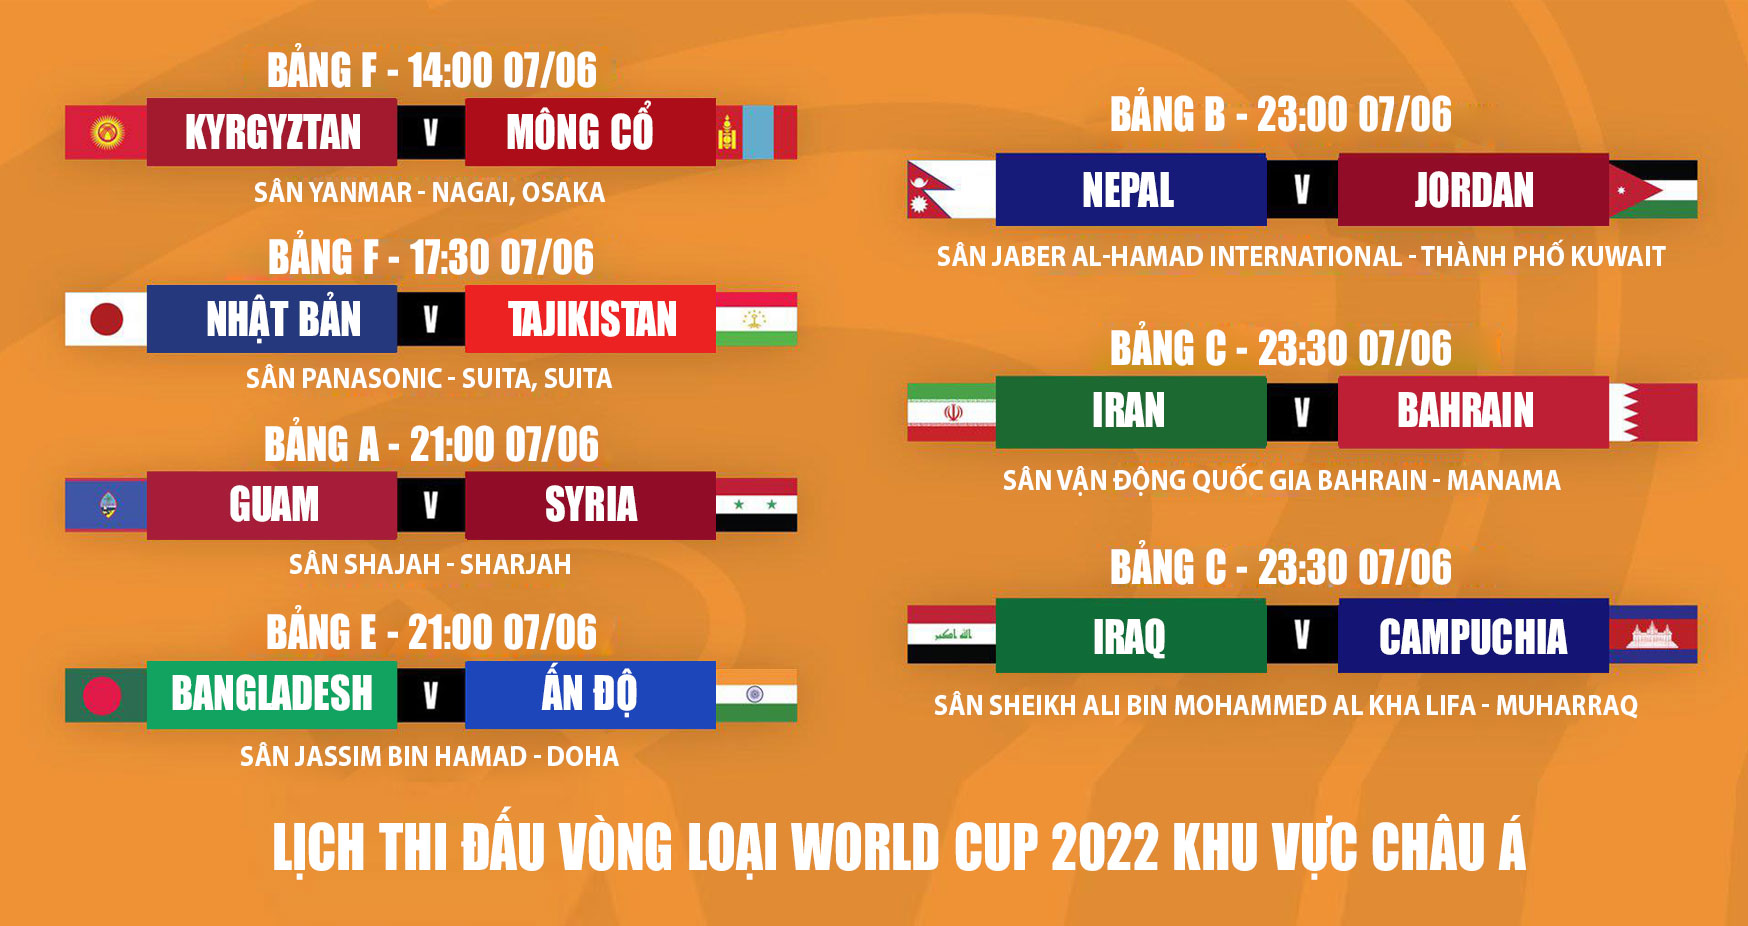 vong-loai-world-cup-2022-khu-vuc-chau-a